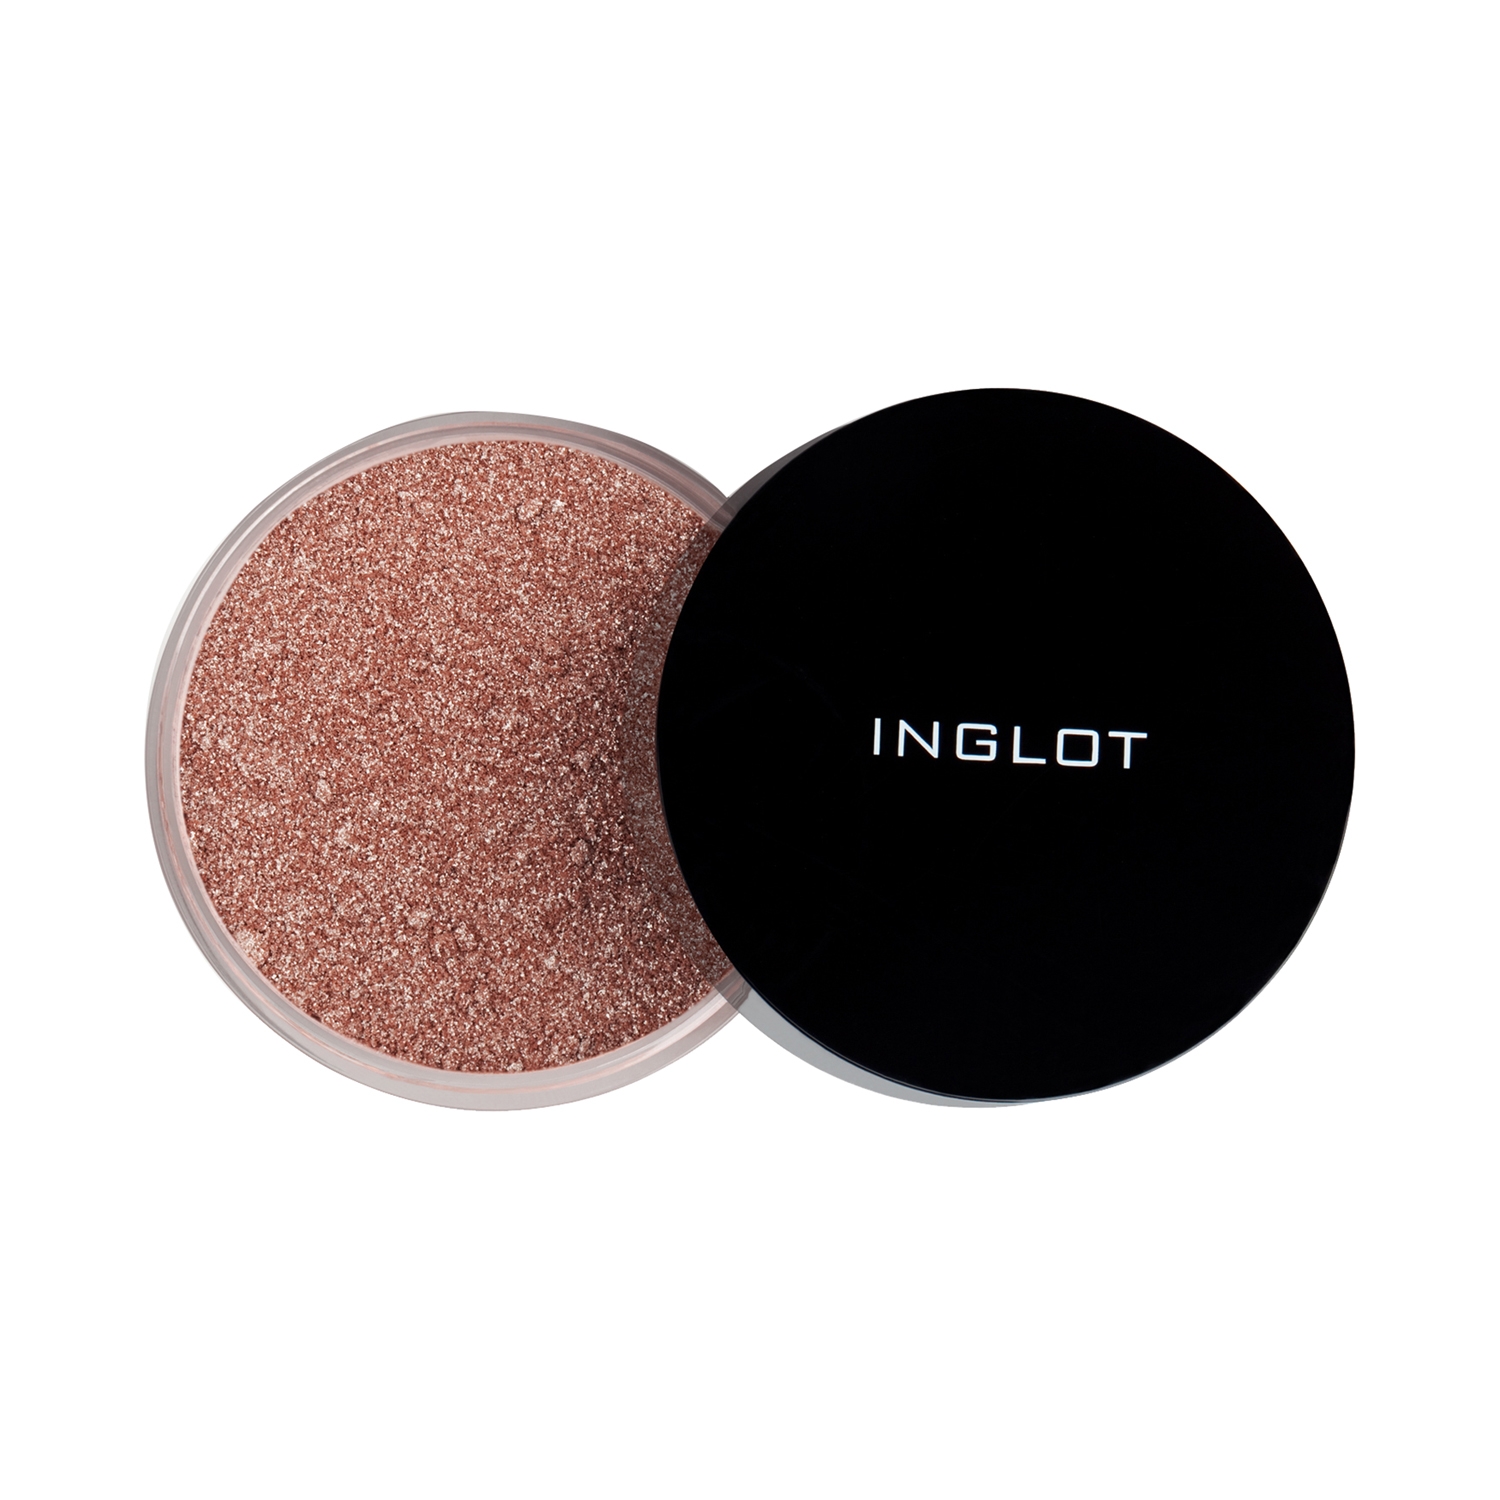 INGLOT | INGLOT Sparkling Dust Feb Highlighter - 01 (2.5g)